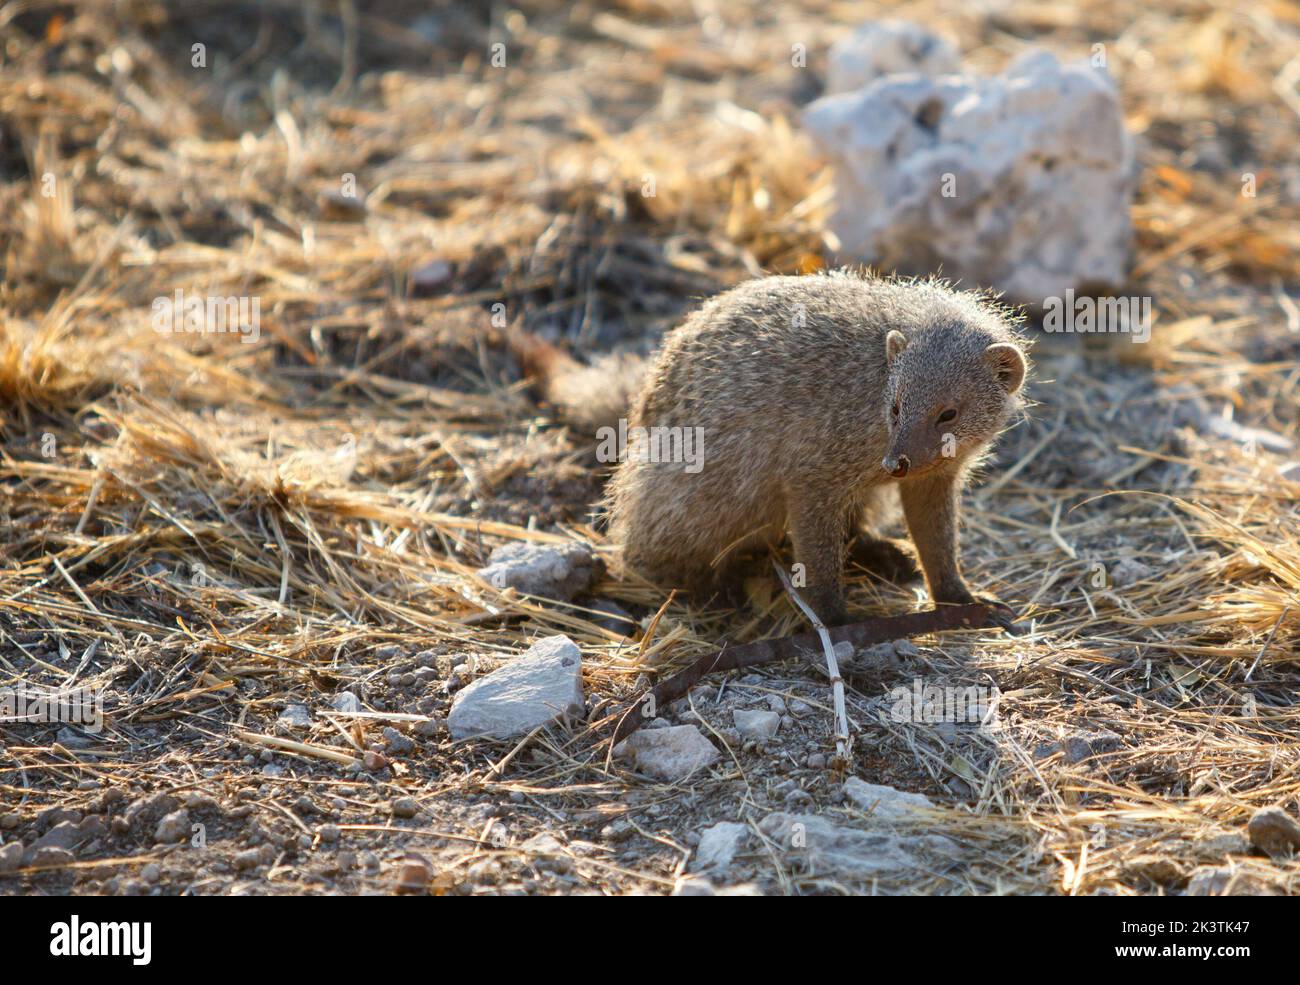 Carino comune sottile Mongoose, riposante sul terreno asciutto nel Parco Nazionale di Etosha, Namibia Foto Stock